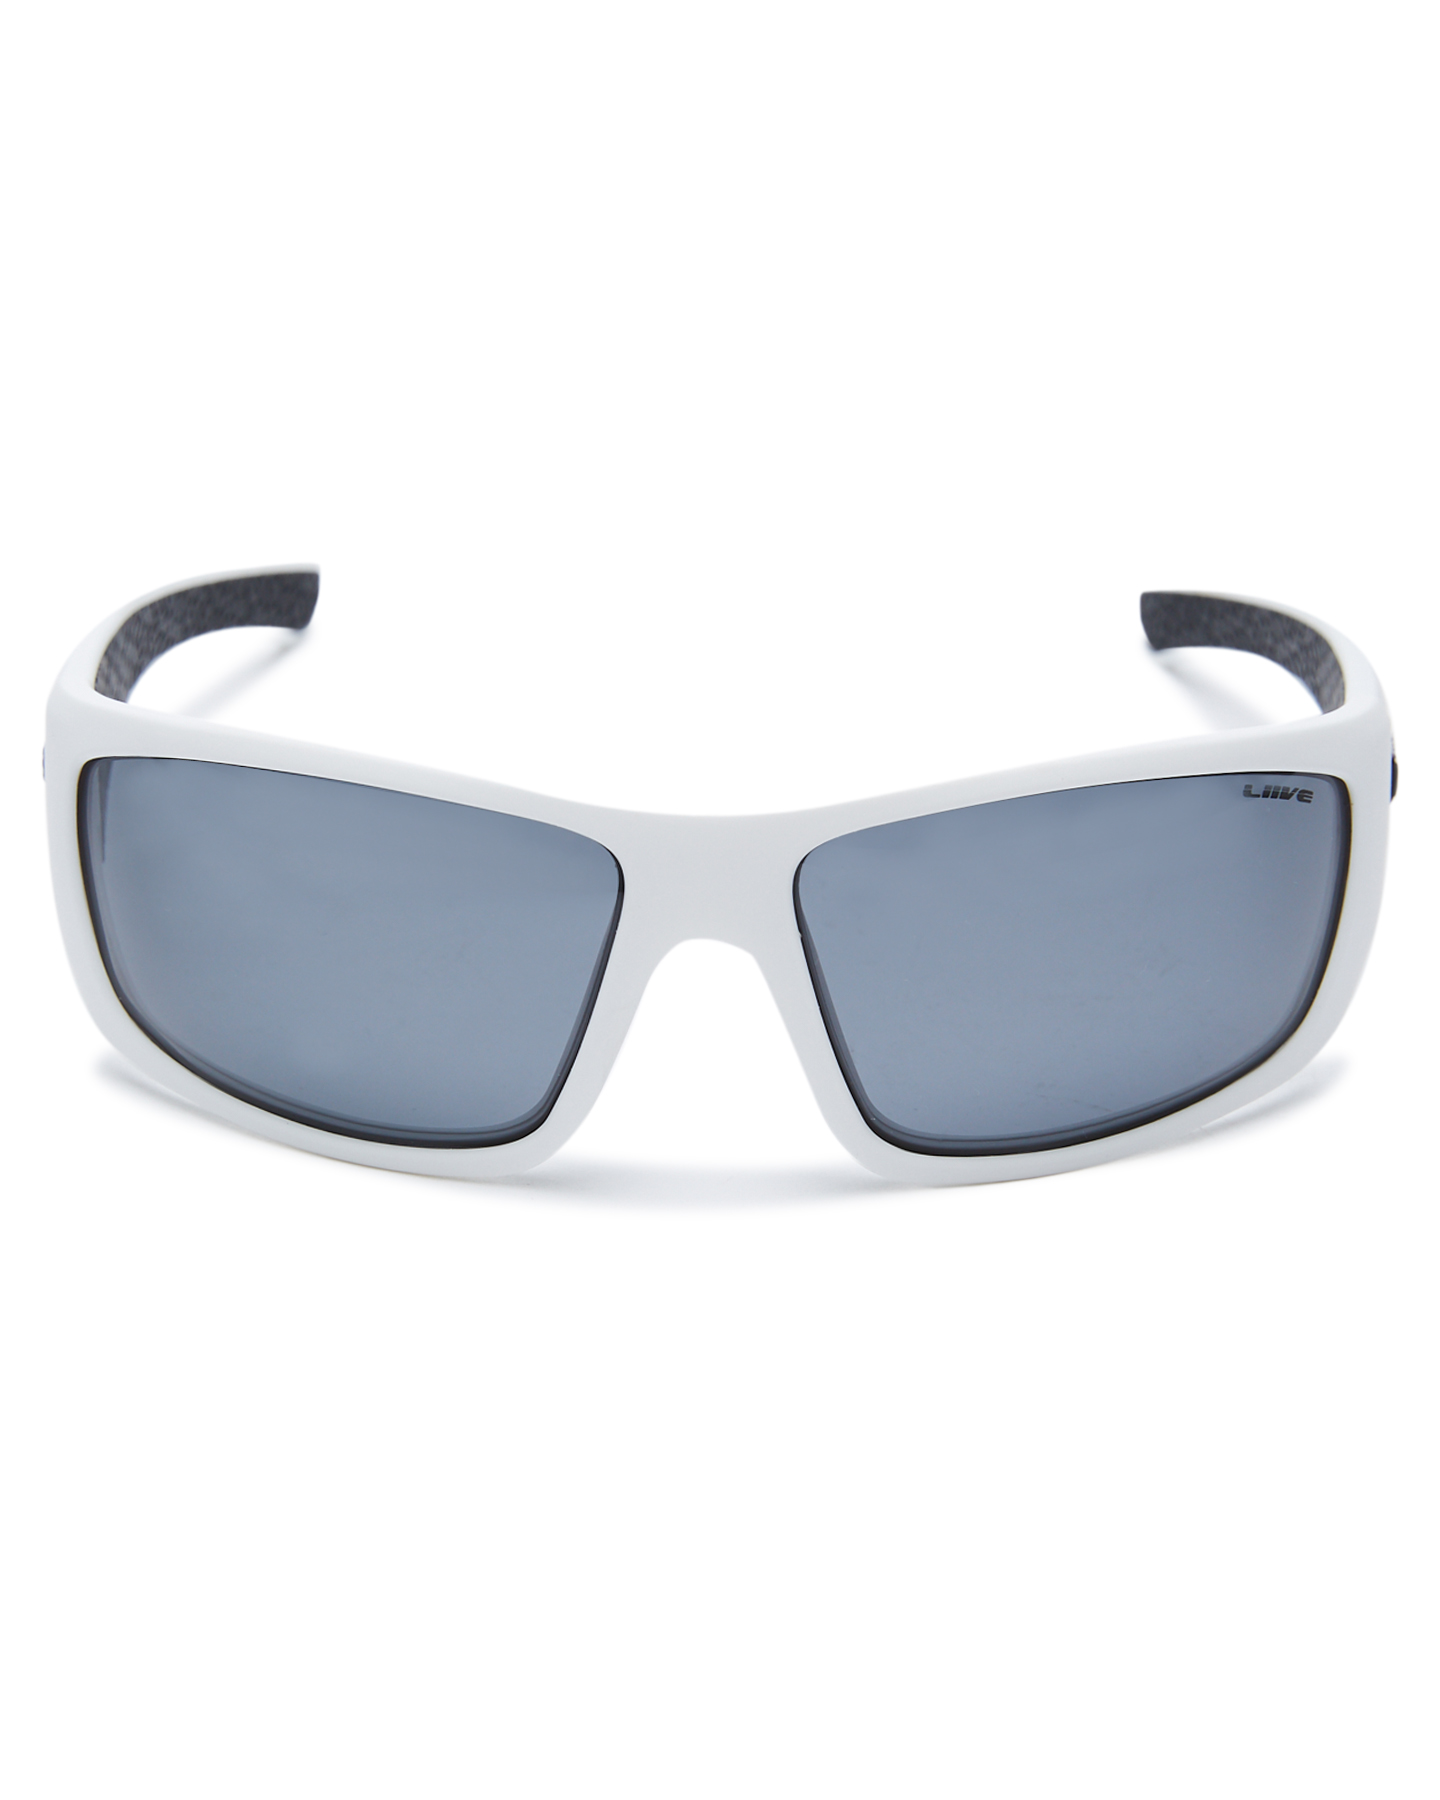 Liive Vision Kuta Polarised Sunglasses - Matte White | SurfStitch